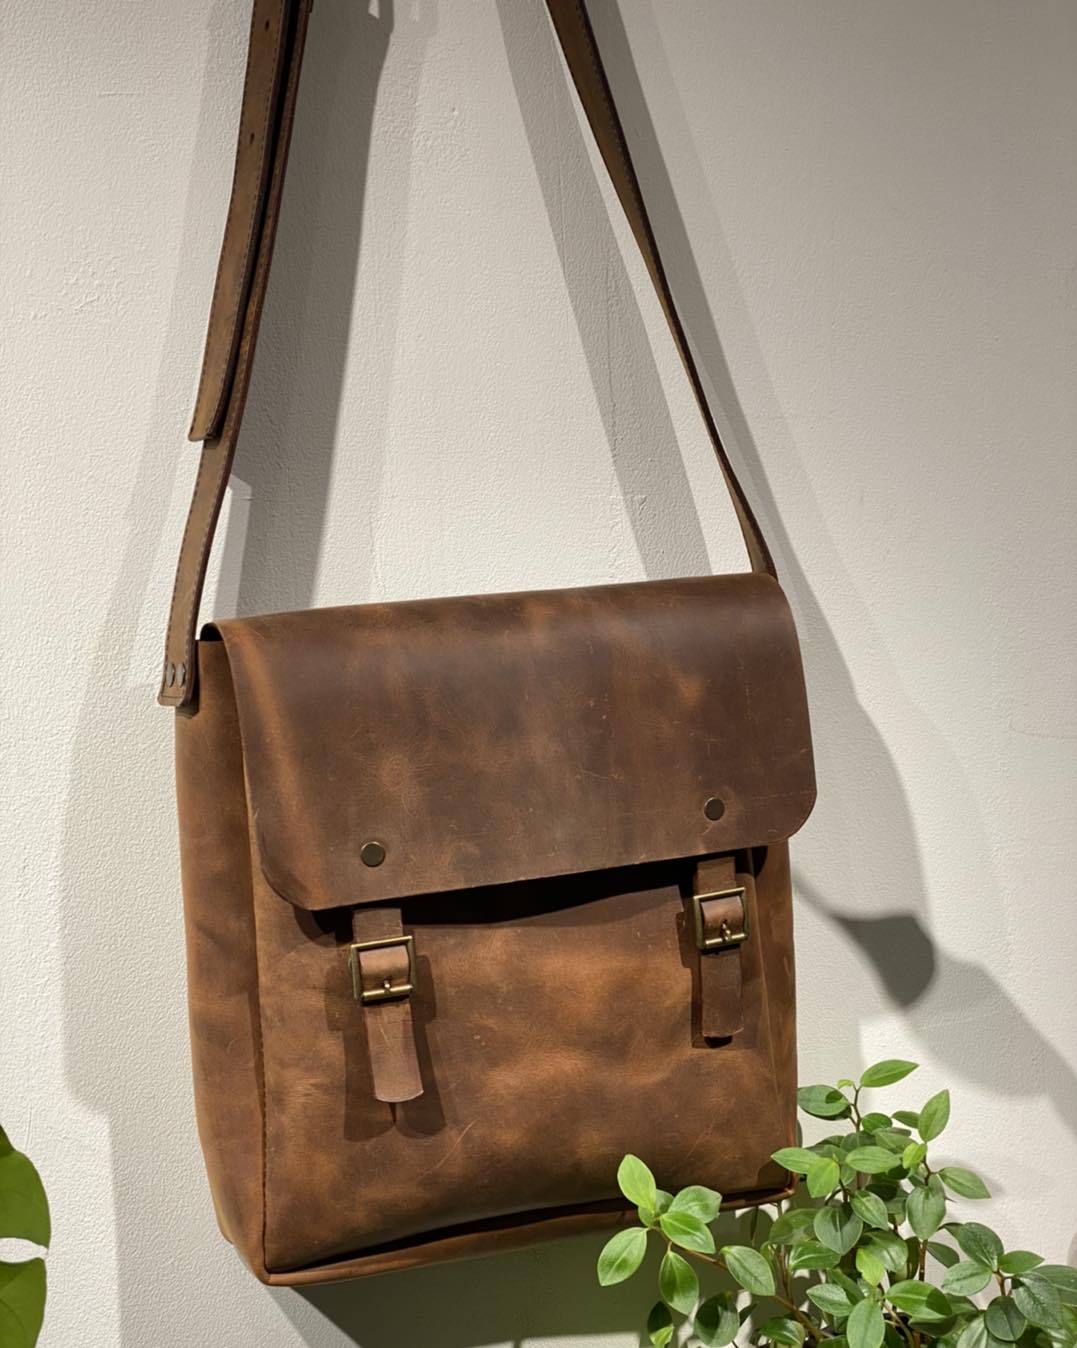 Natural leather bag - "Denk"